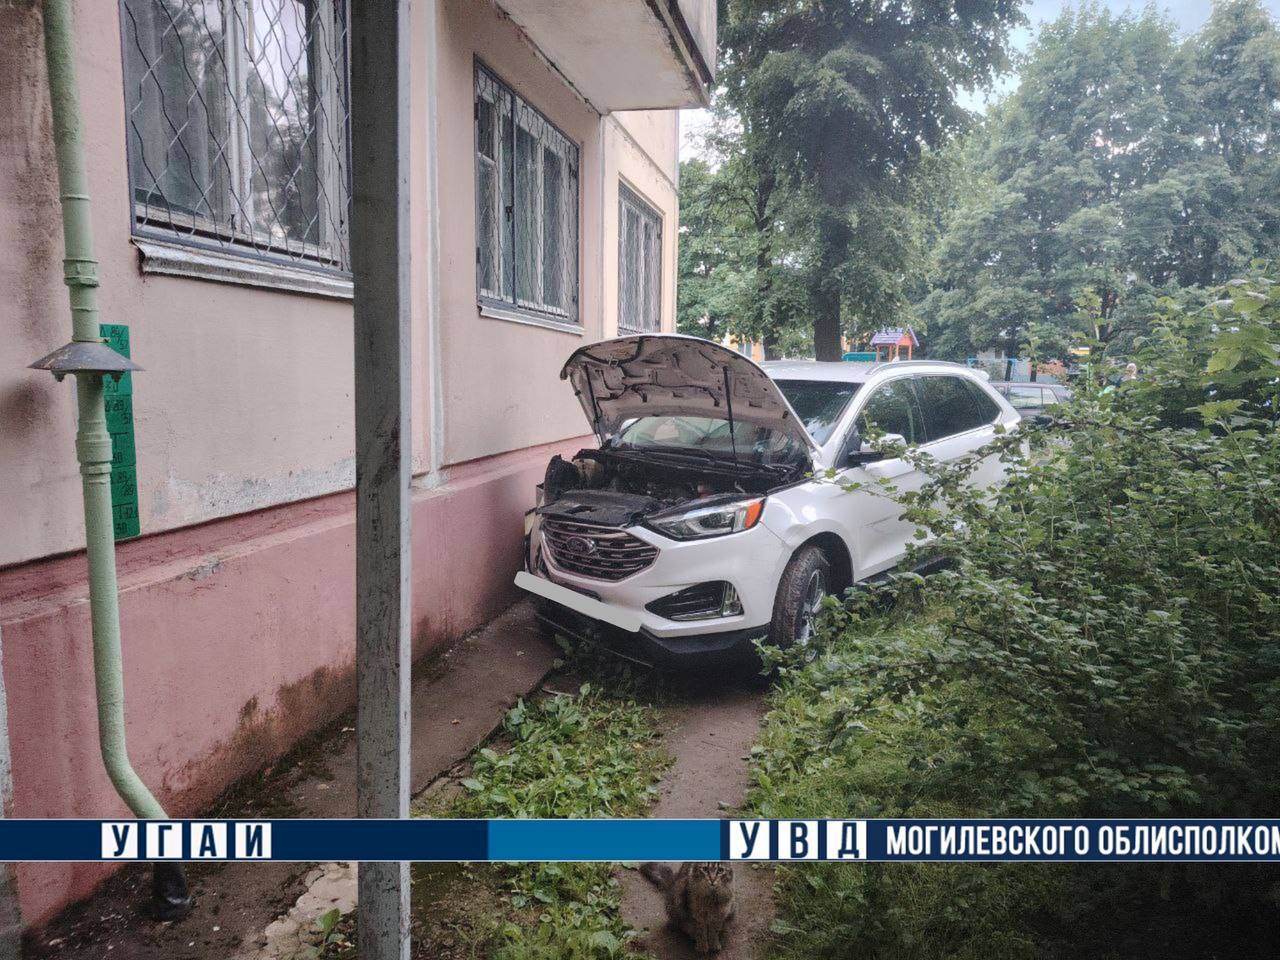 Водитель иномарки, которая въехала вчера в пятиэтажный дом в Могилеве, погиб
